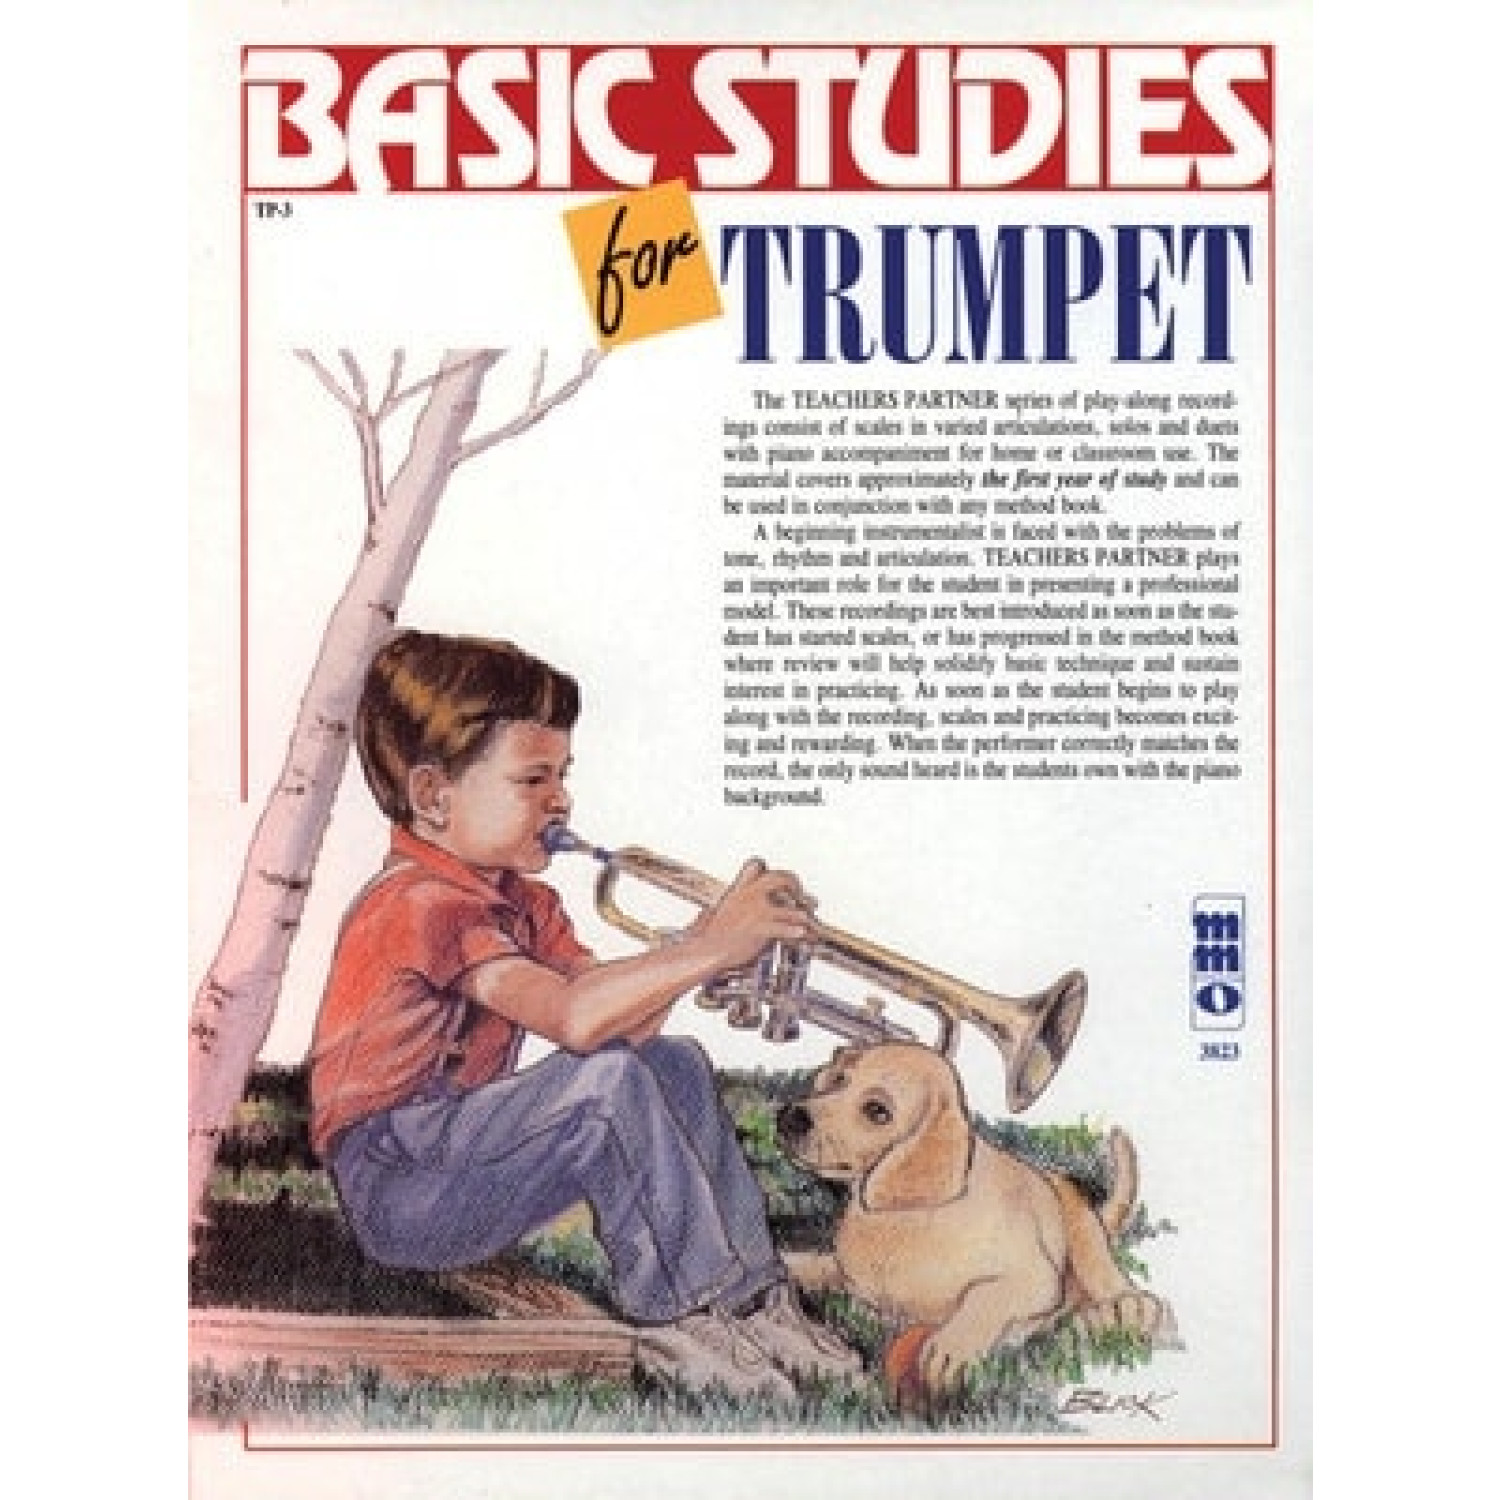 contemporary trumpet repertoire